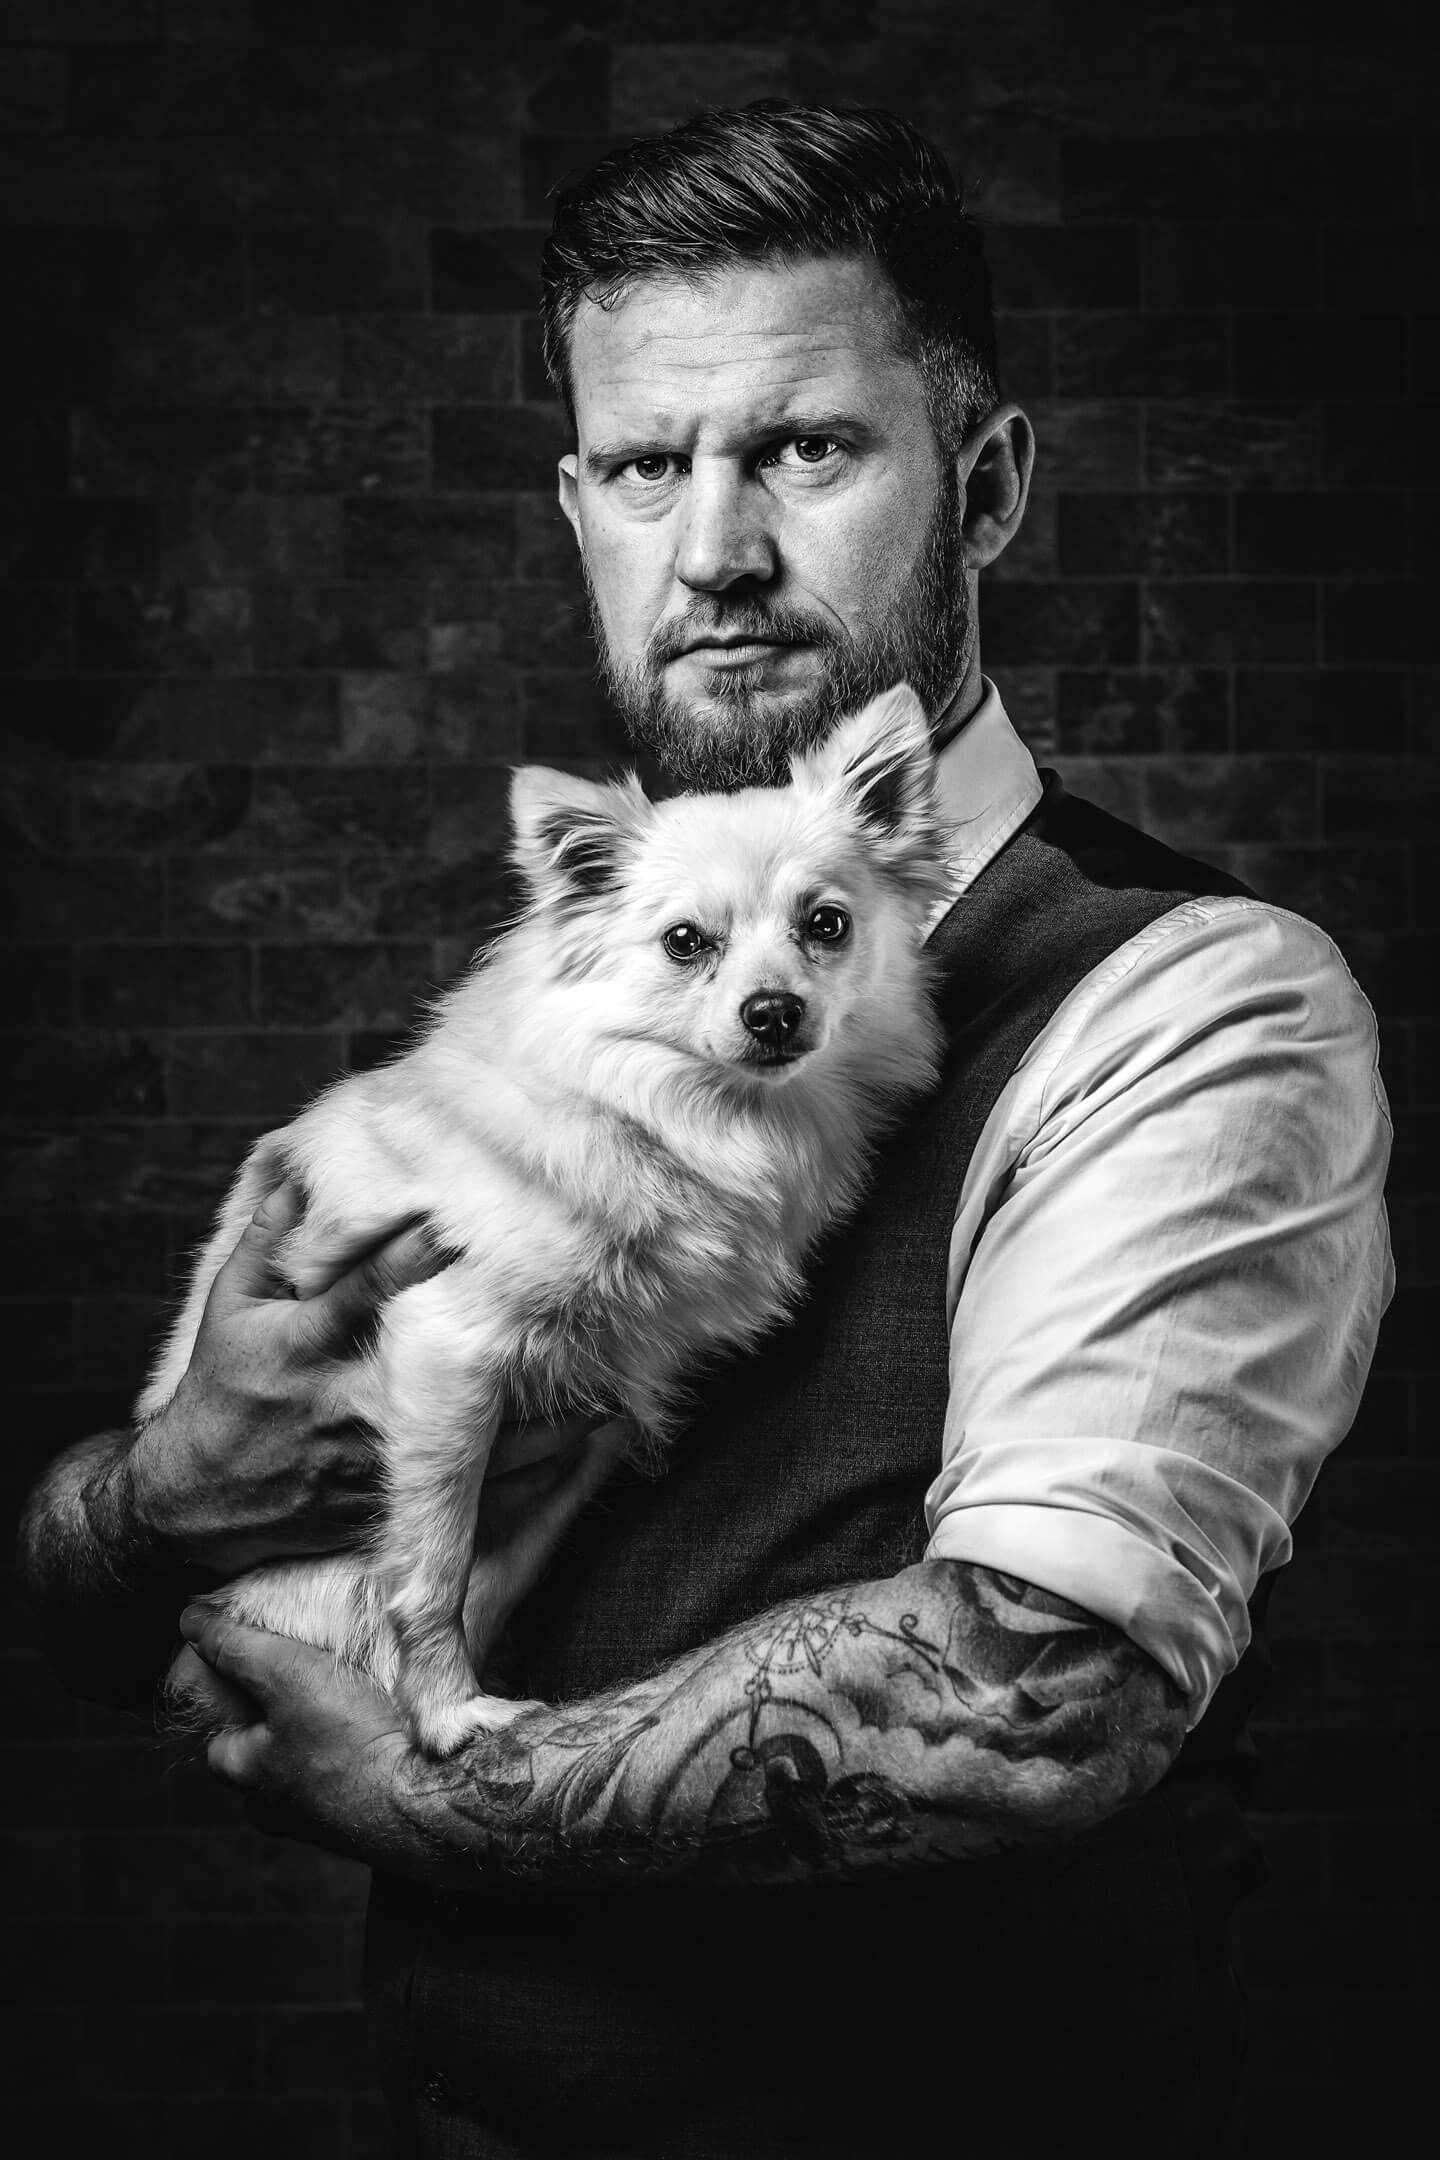 Mann mit Hund. Fotografiert von Florian Läufer